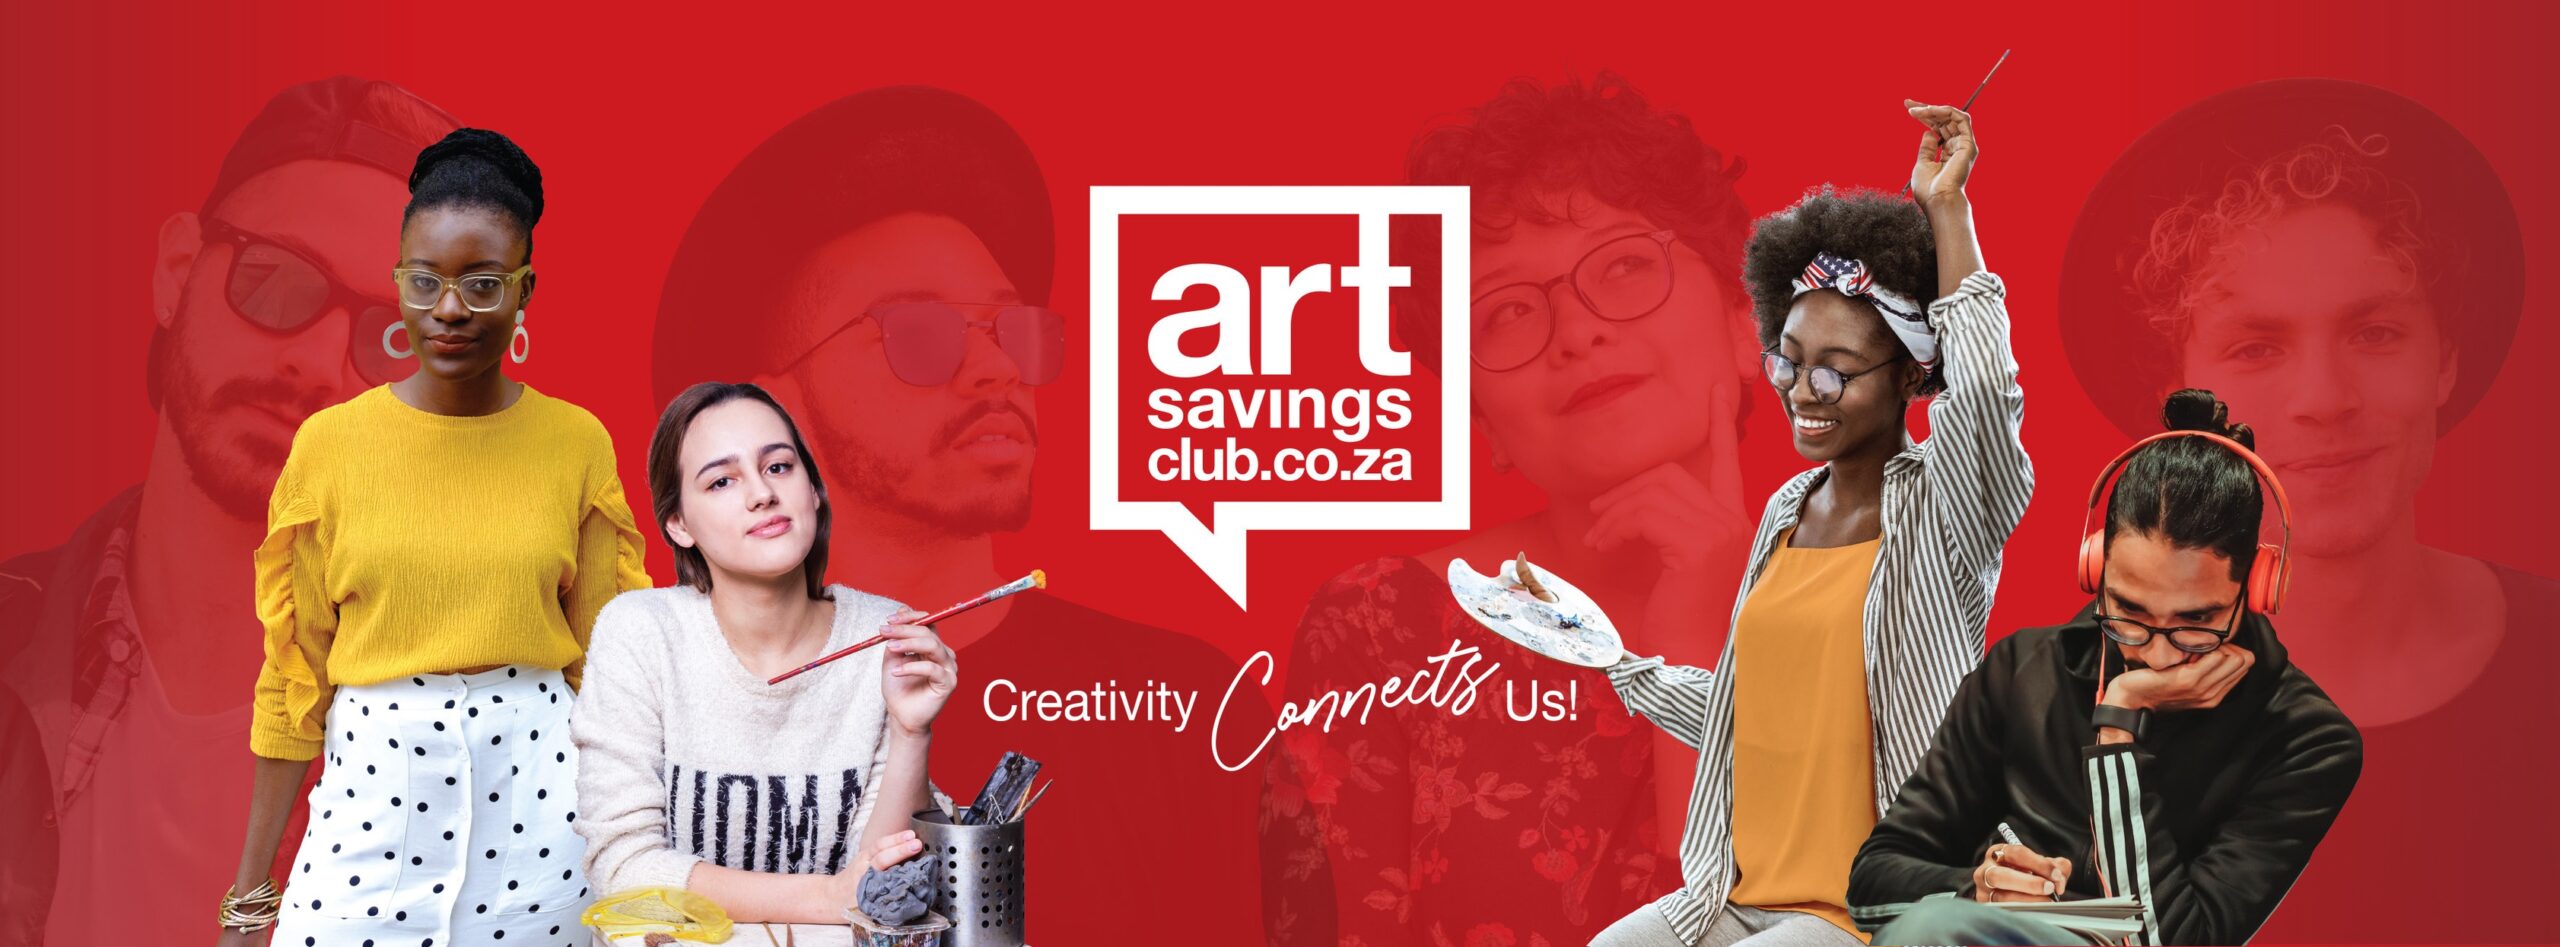 artsavingsclub.co.za